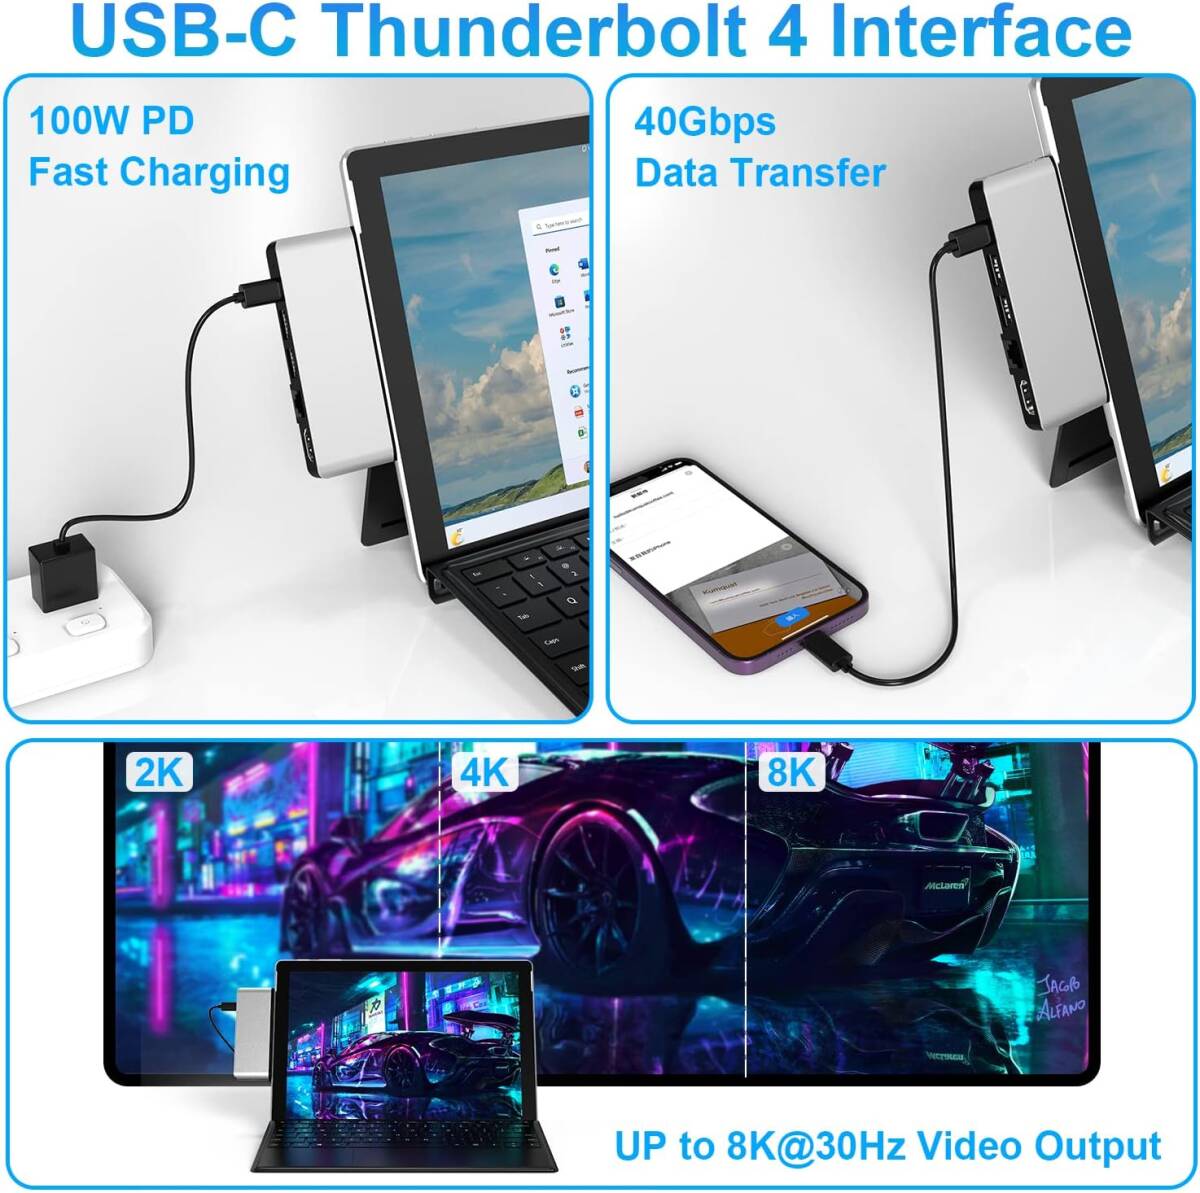 Surface Pro 9 専用USB ハブ 8-IN-2 サーフェスプロ9 ハブ 4K